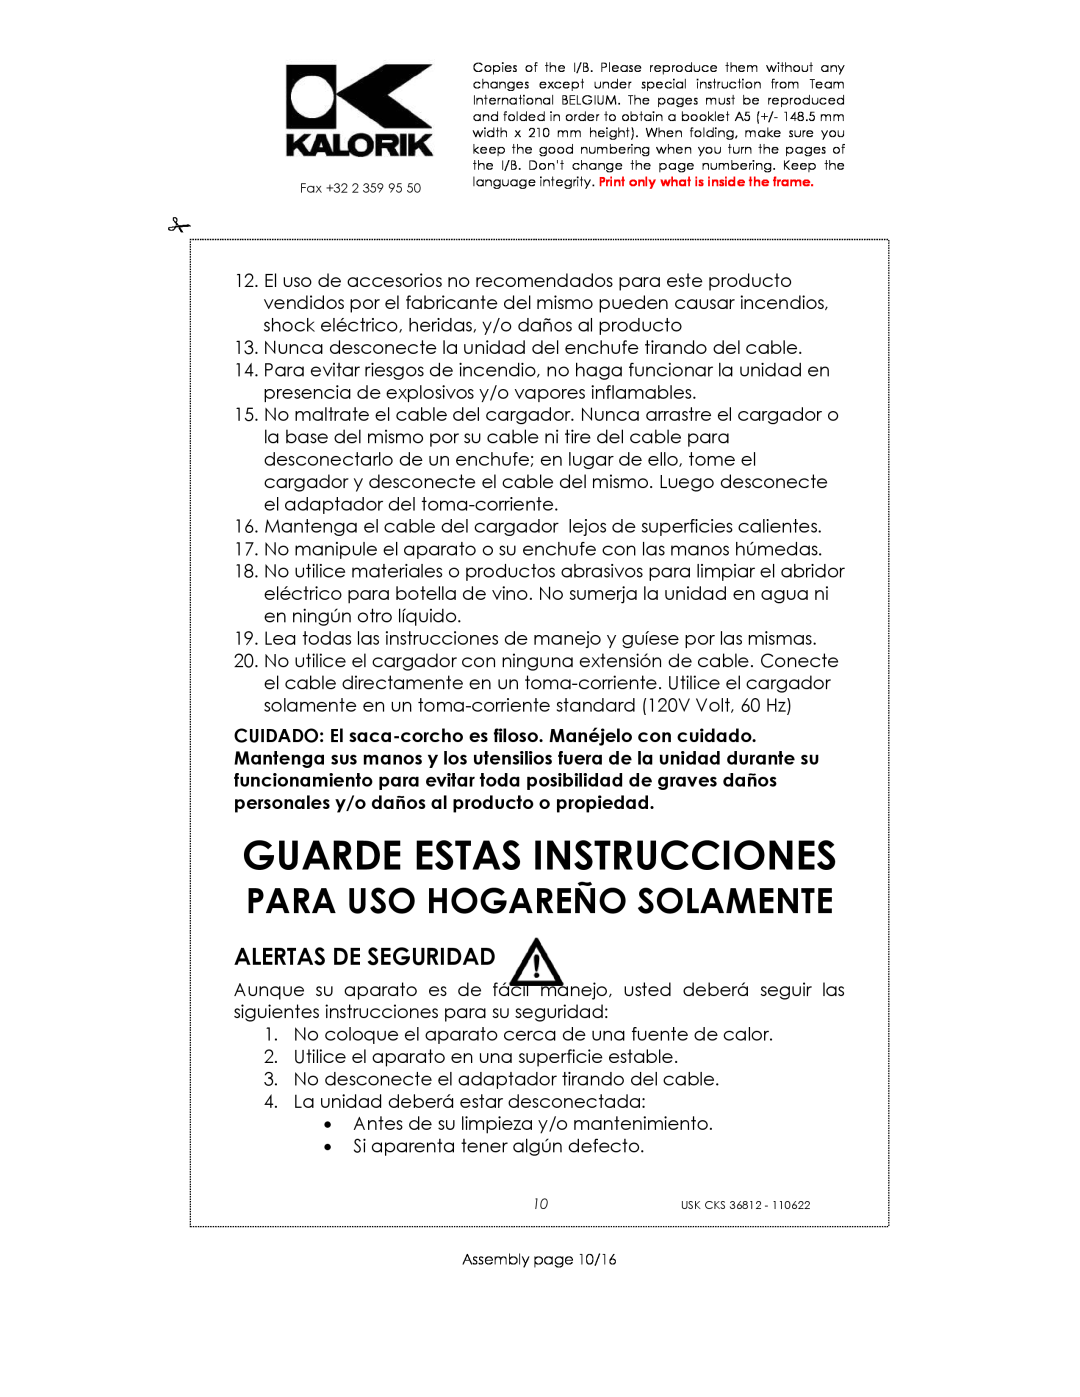 Kalorik USK CKS 36812 manual Guarde Estas Instrucciones, Alertas De Seguridad, Para Uso Hogareño Solamente 